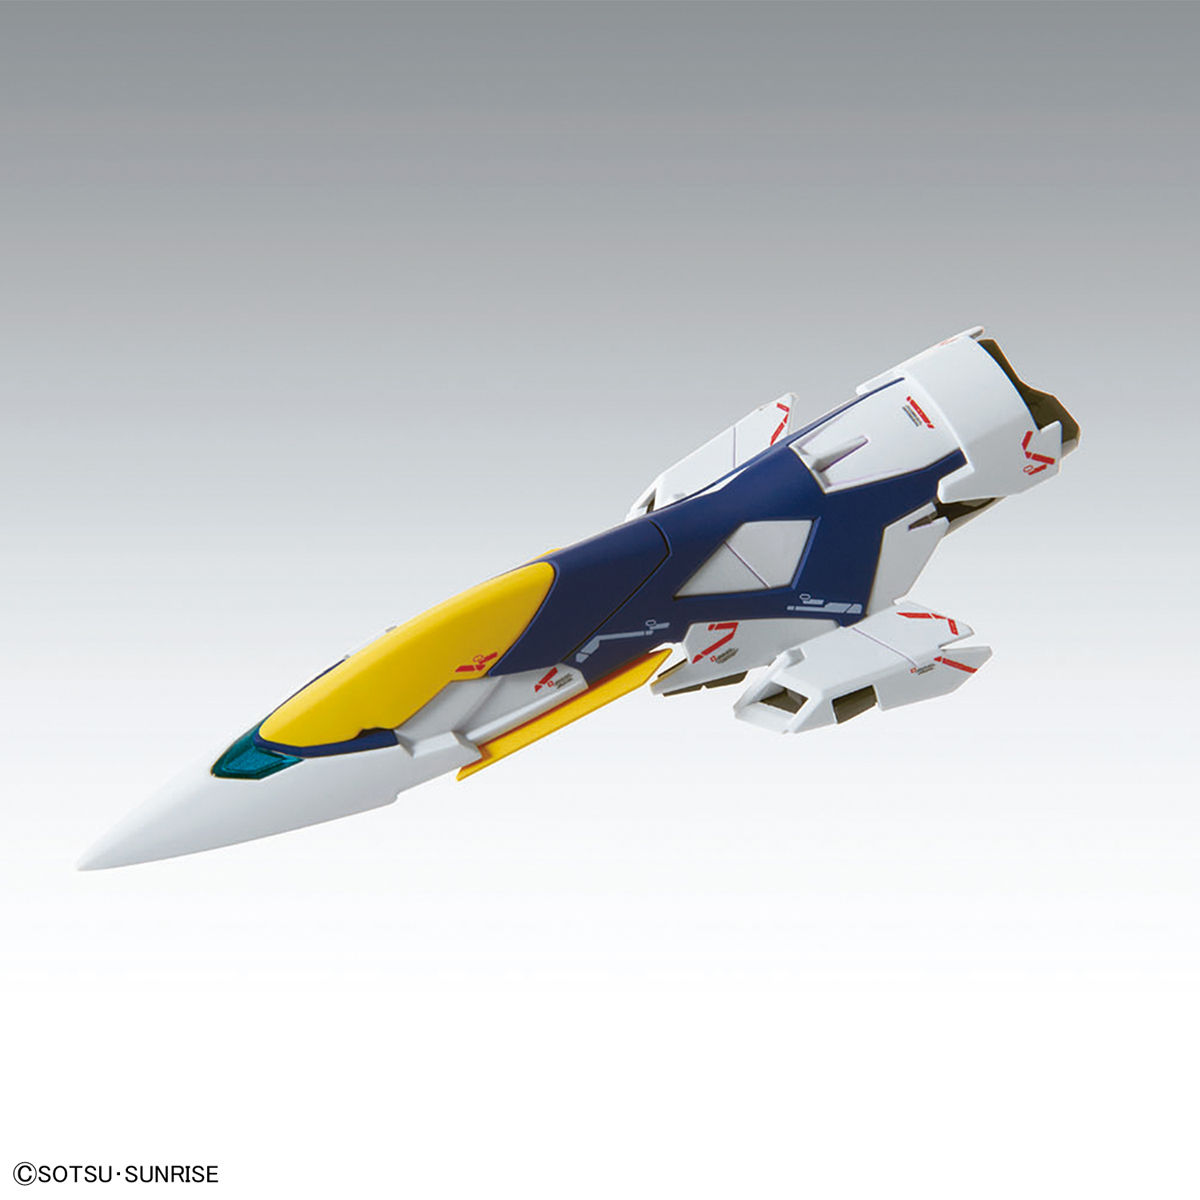 MG 1/100 No.215 XXXG-00W0 Wing Gundam Zero(Endless Waltz) Ver.Ka